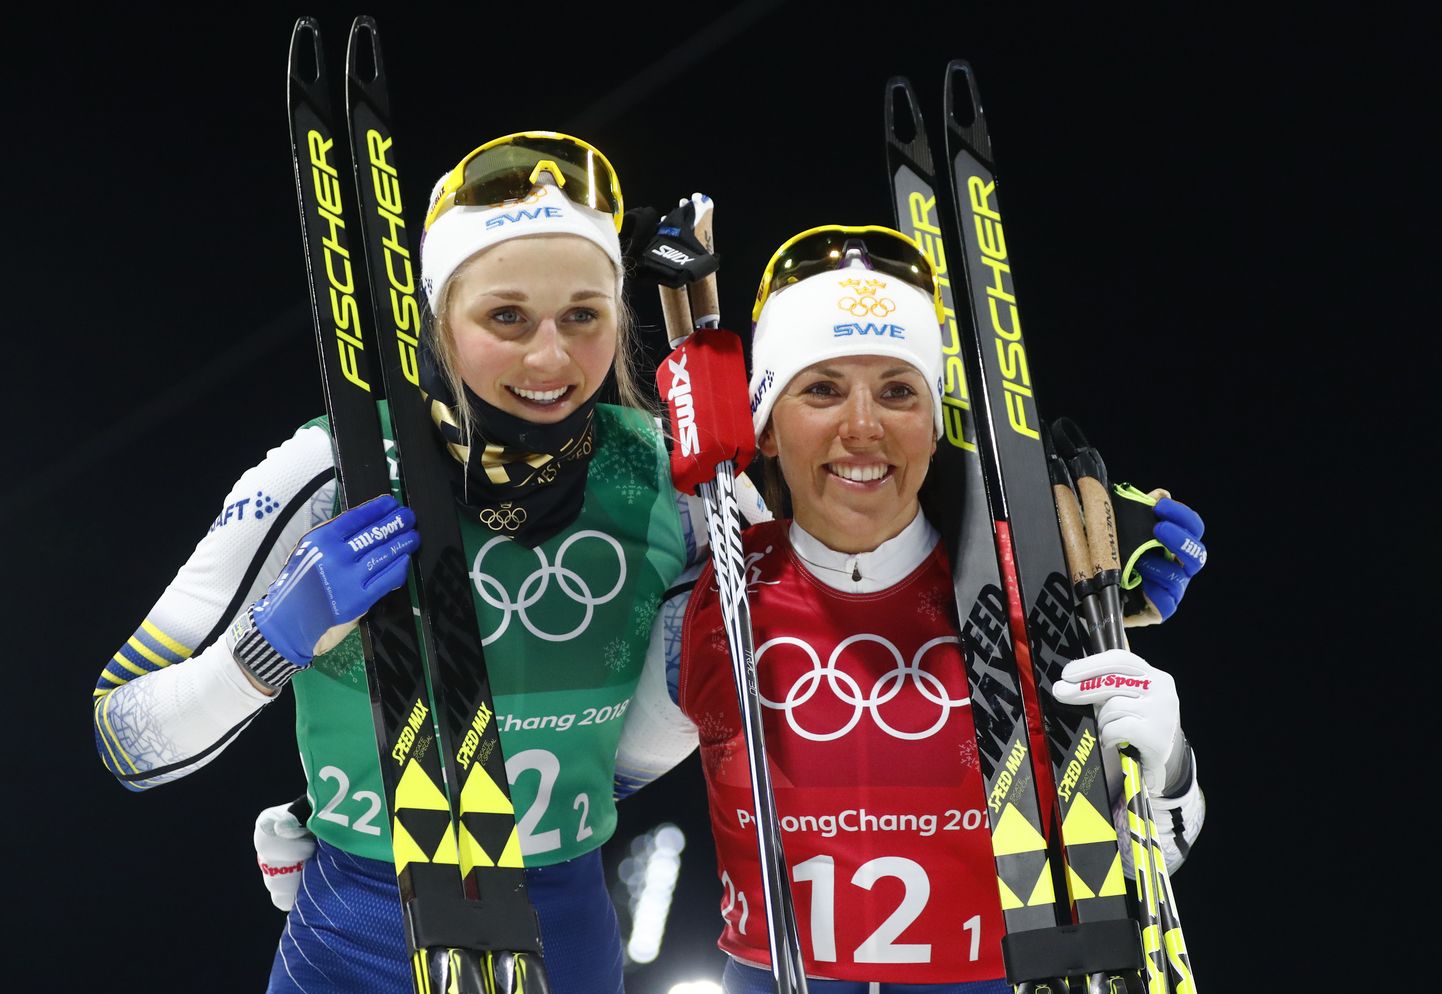 Kahe peale võidetud kaks kulda ja ühtekokku kaheksa olümpiamedalit ei vii sind veel parimate sekka, nagu Charlotte Kalla (paremal) ja Stina Nilsson nüüd teavad.